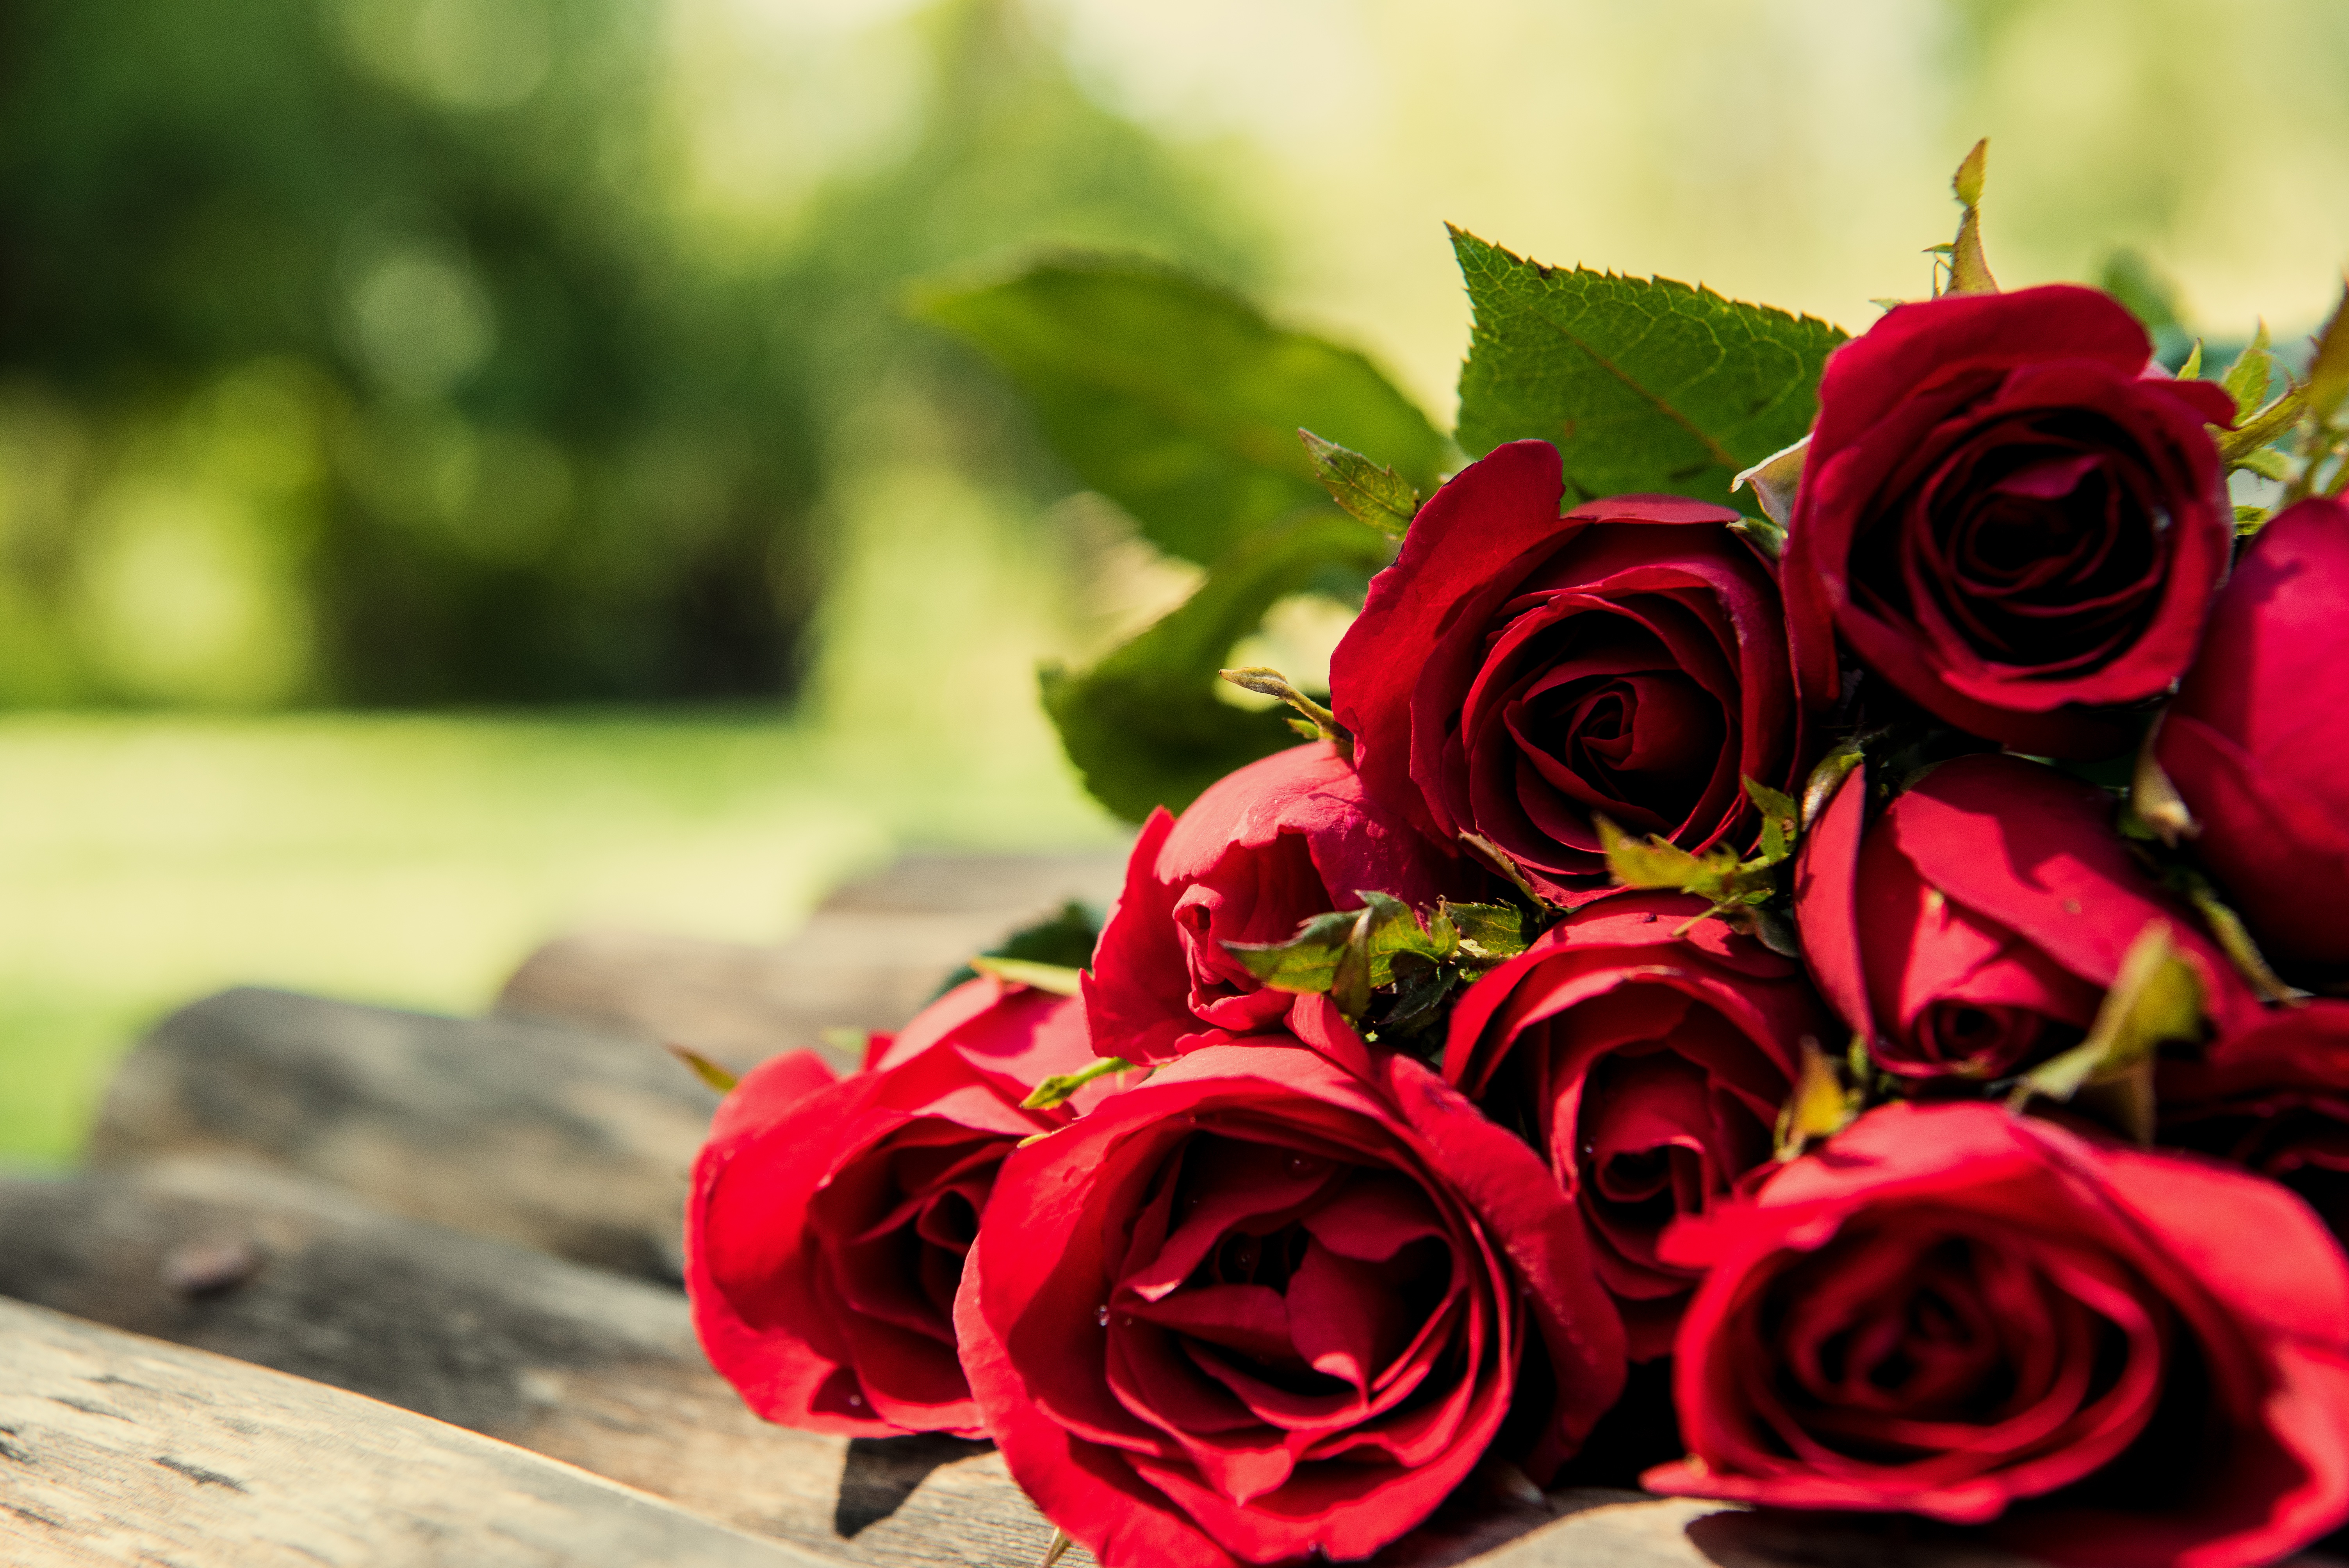 Скачать обои бесплатно Цветок, Роза, Красная Роза, Красный Цветок, Сделано Человеком картинка на рабочий стол ПК